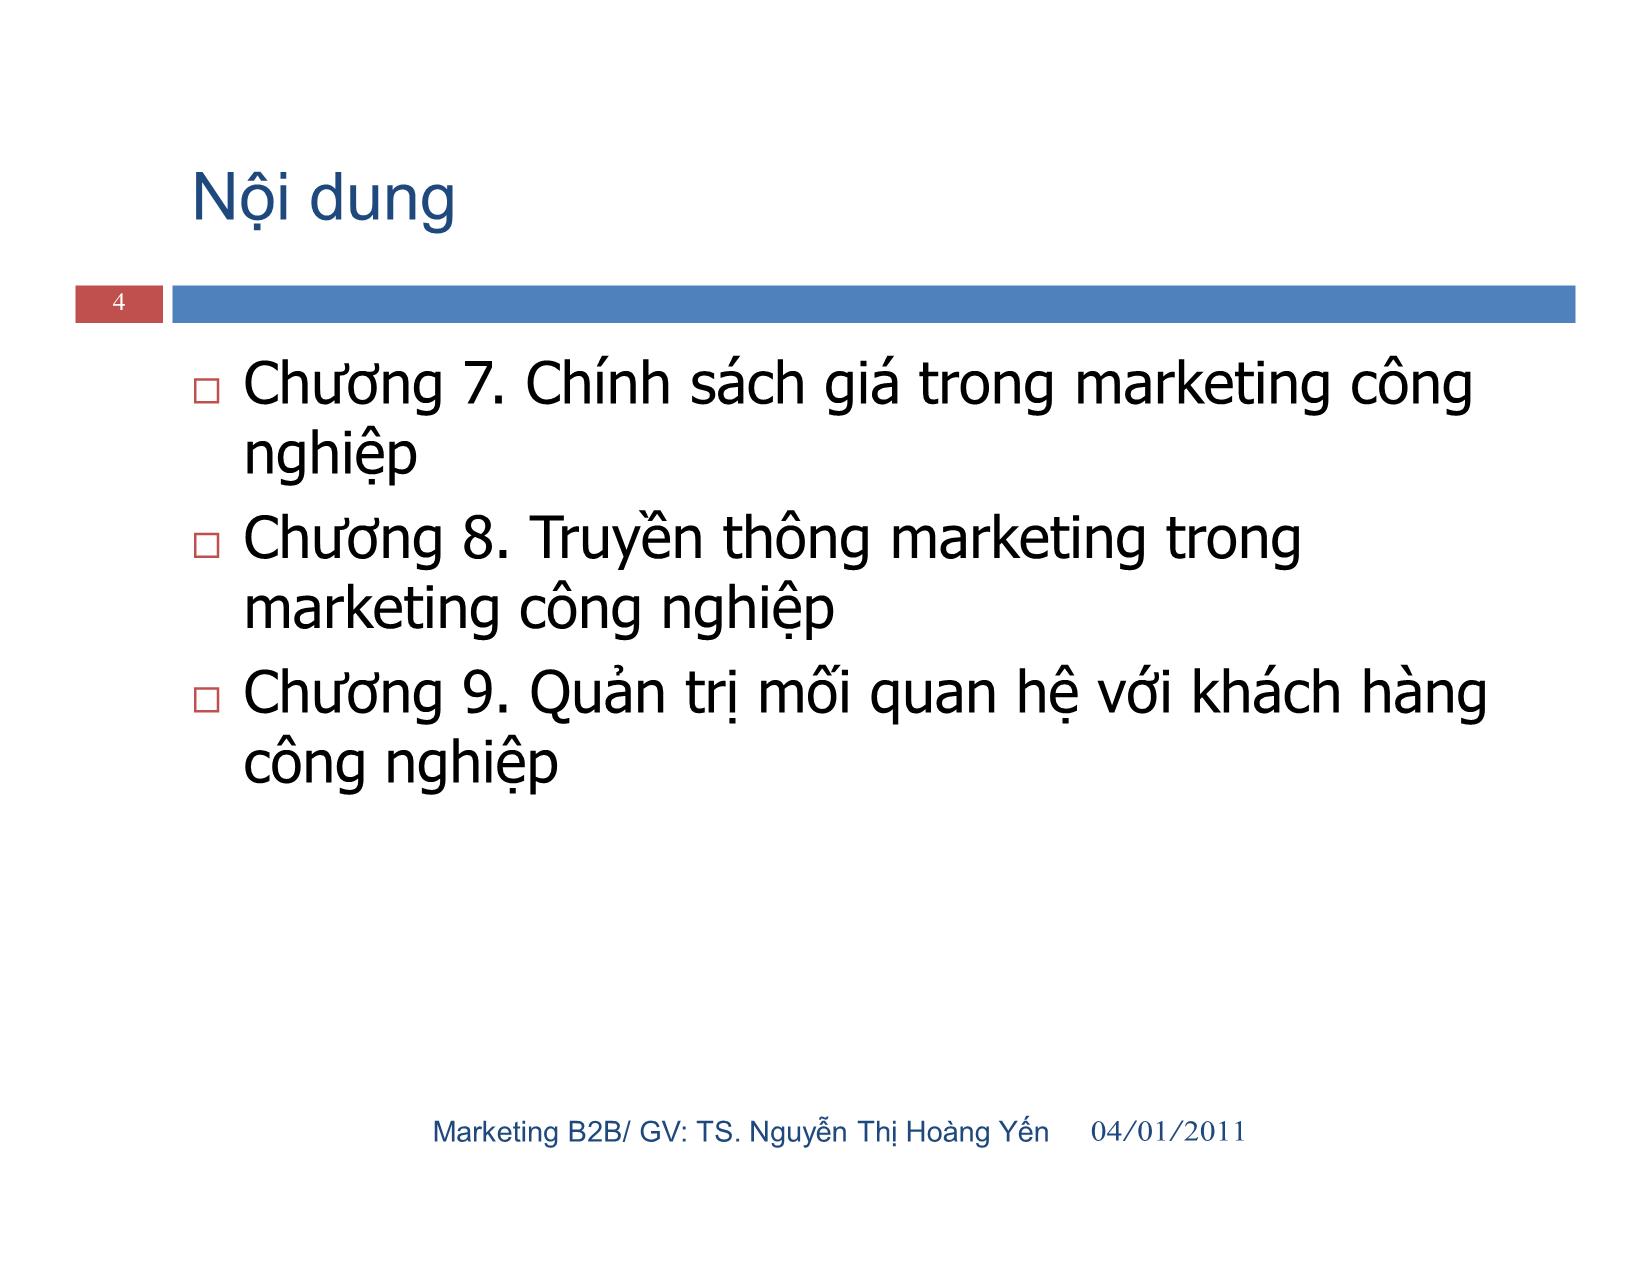 Giáo trình Marketing công nghiệp (marketing b2b) trang 4